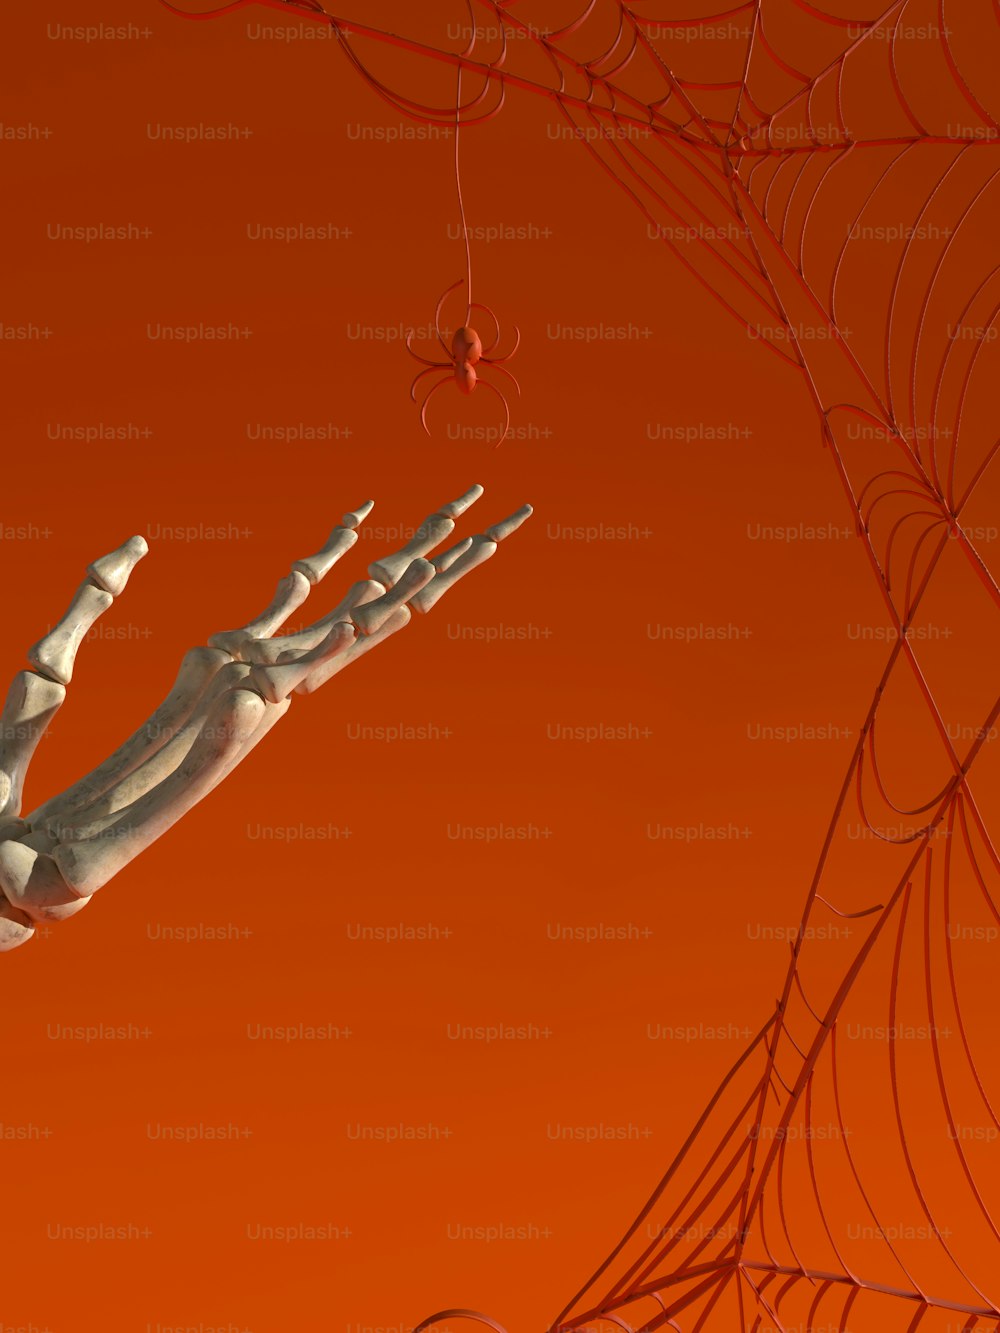 Una mano de esqueleto alcanzando una tela de araña